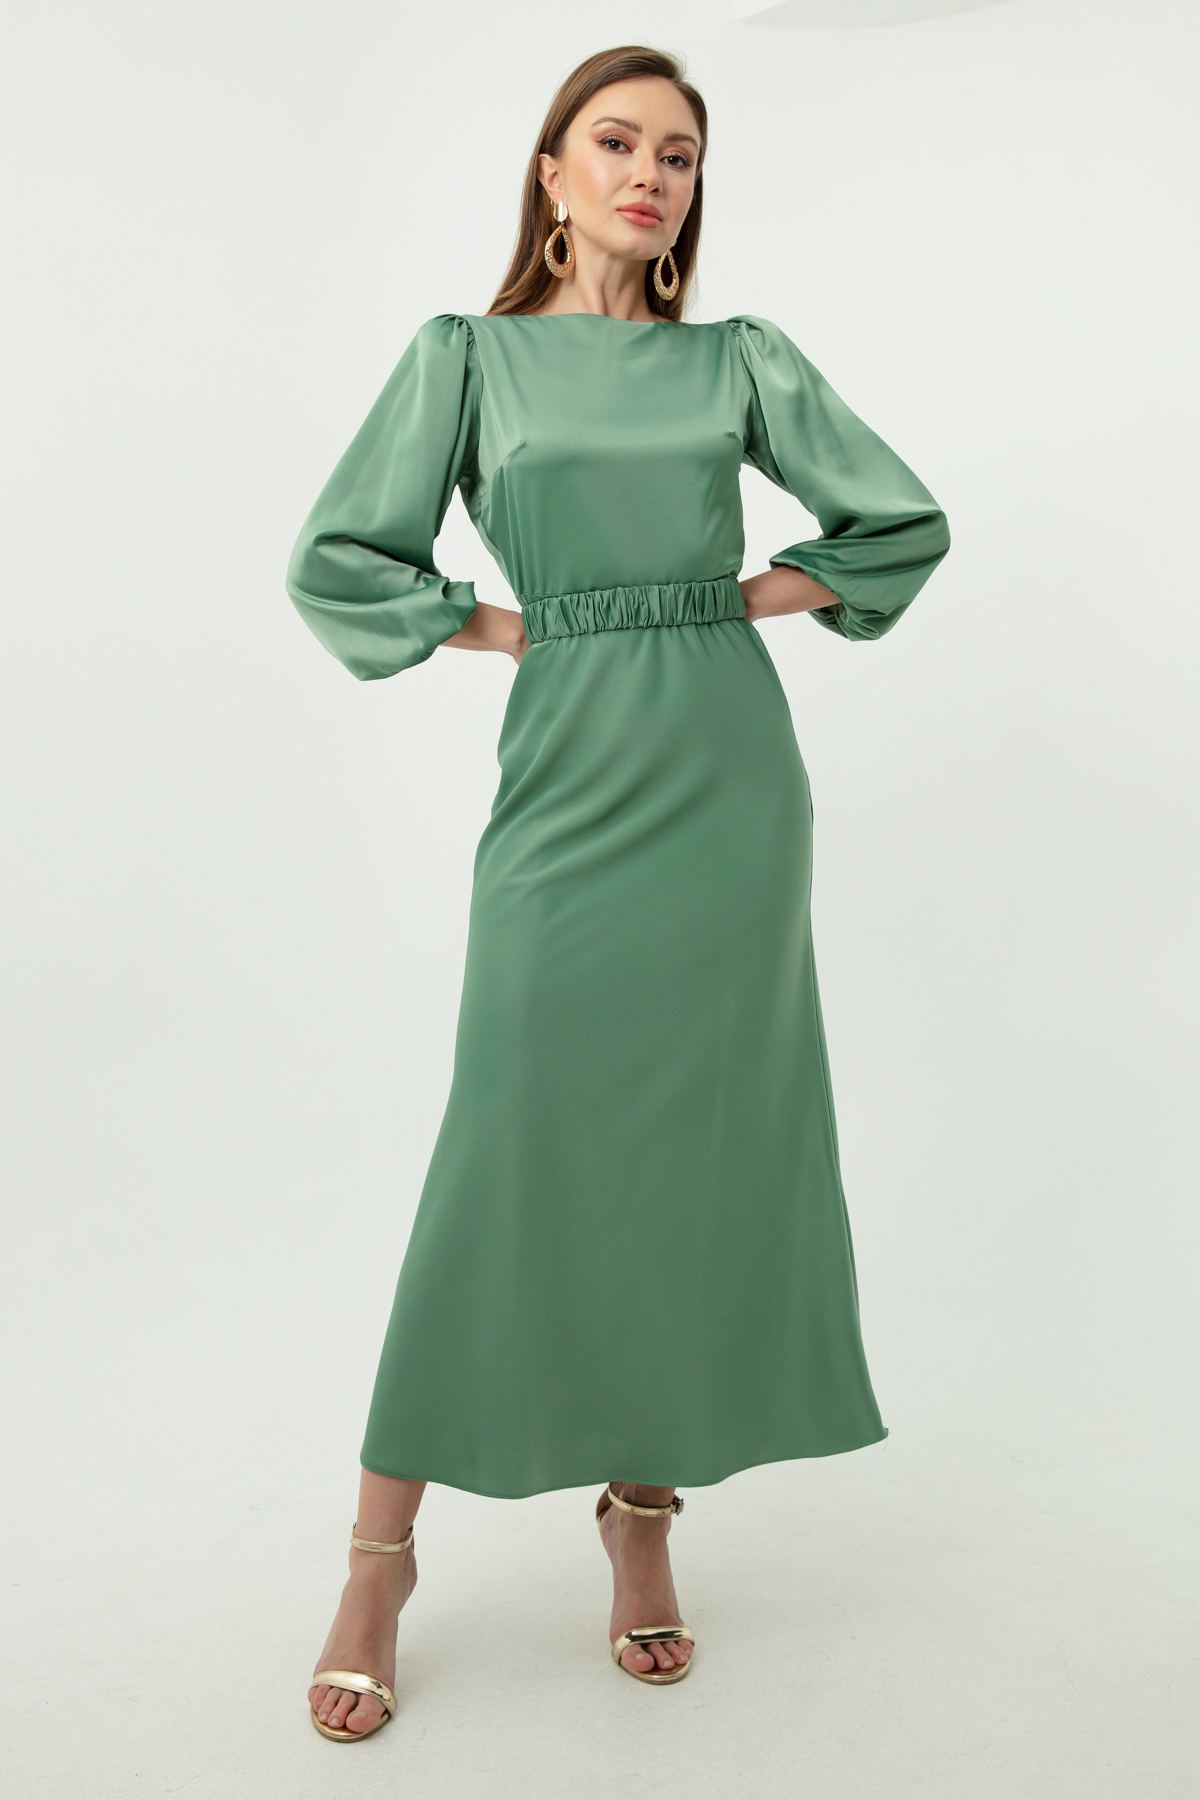 Women's Mint Green Engagement Dress